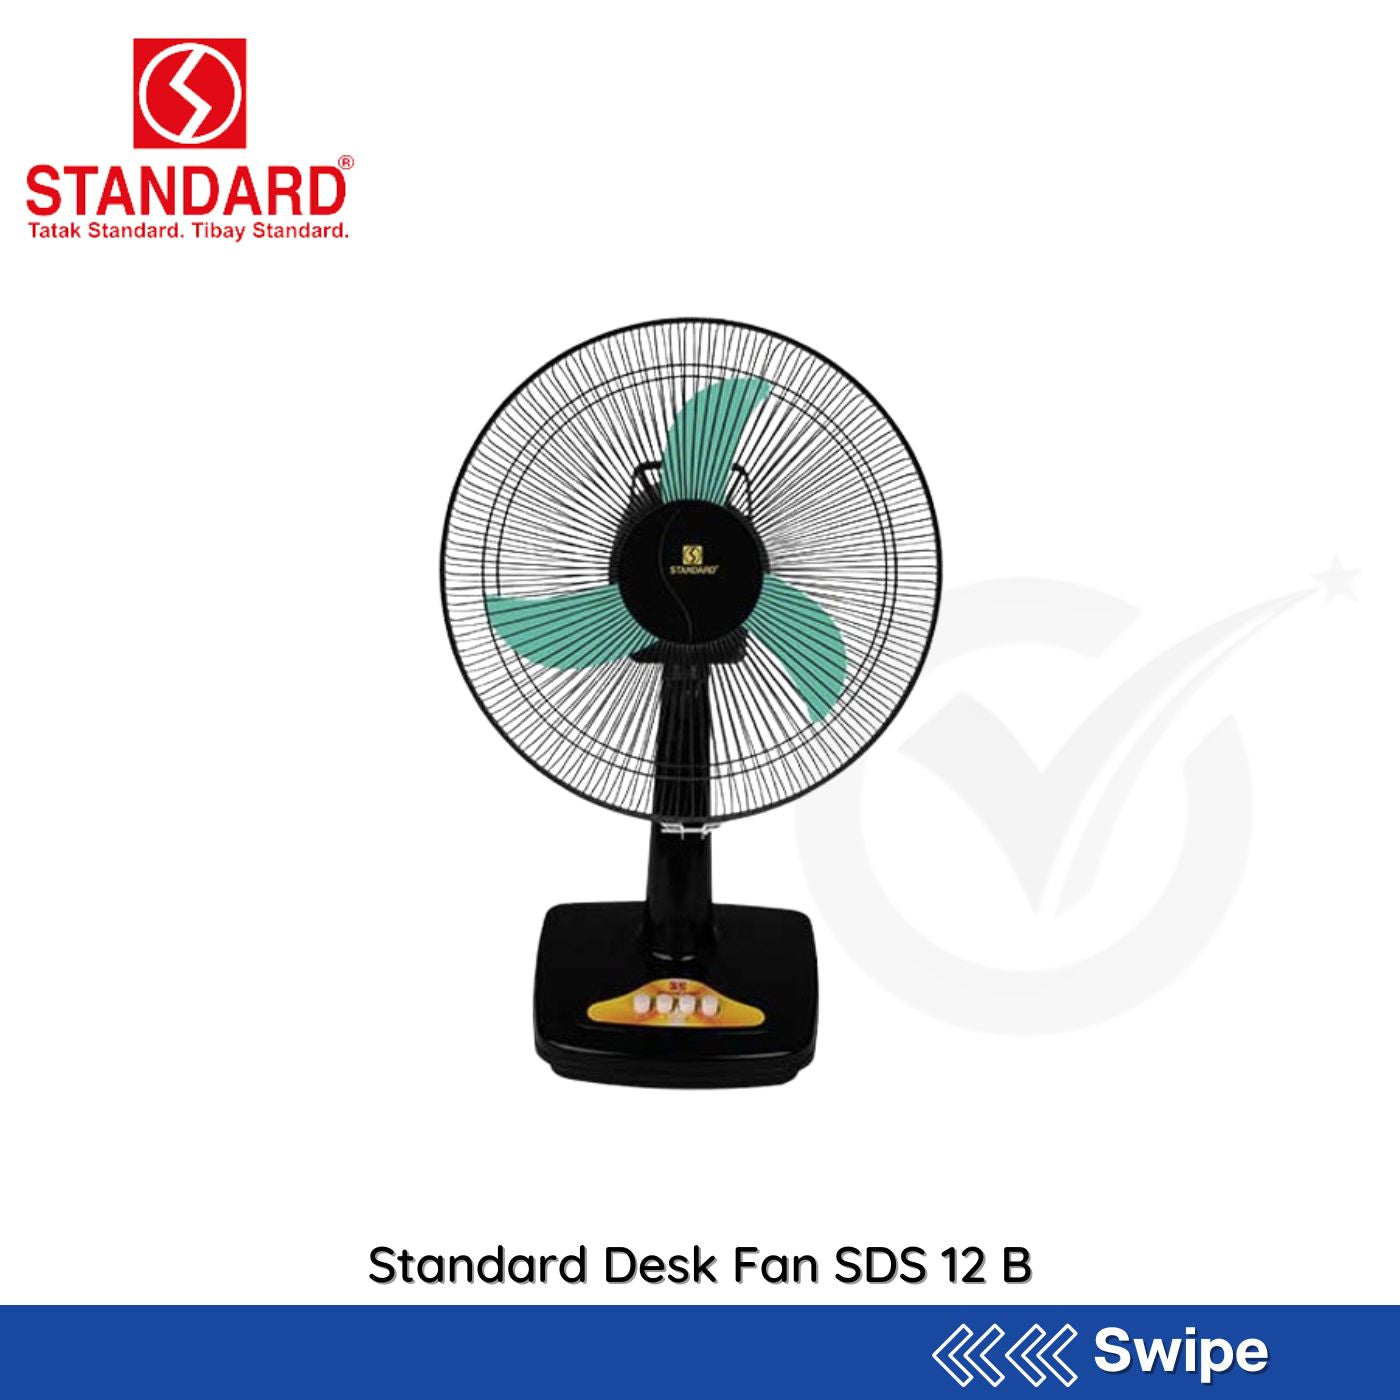 Standard Desk Fan SDS 12 B